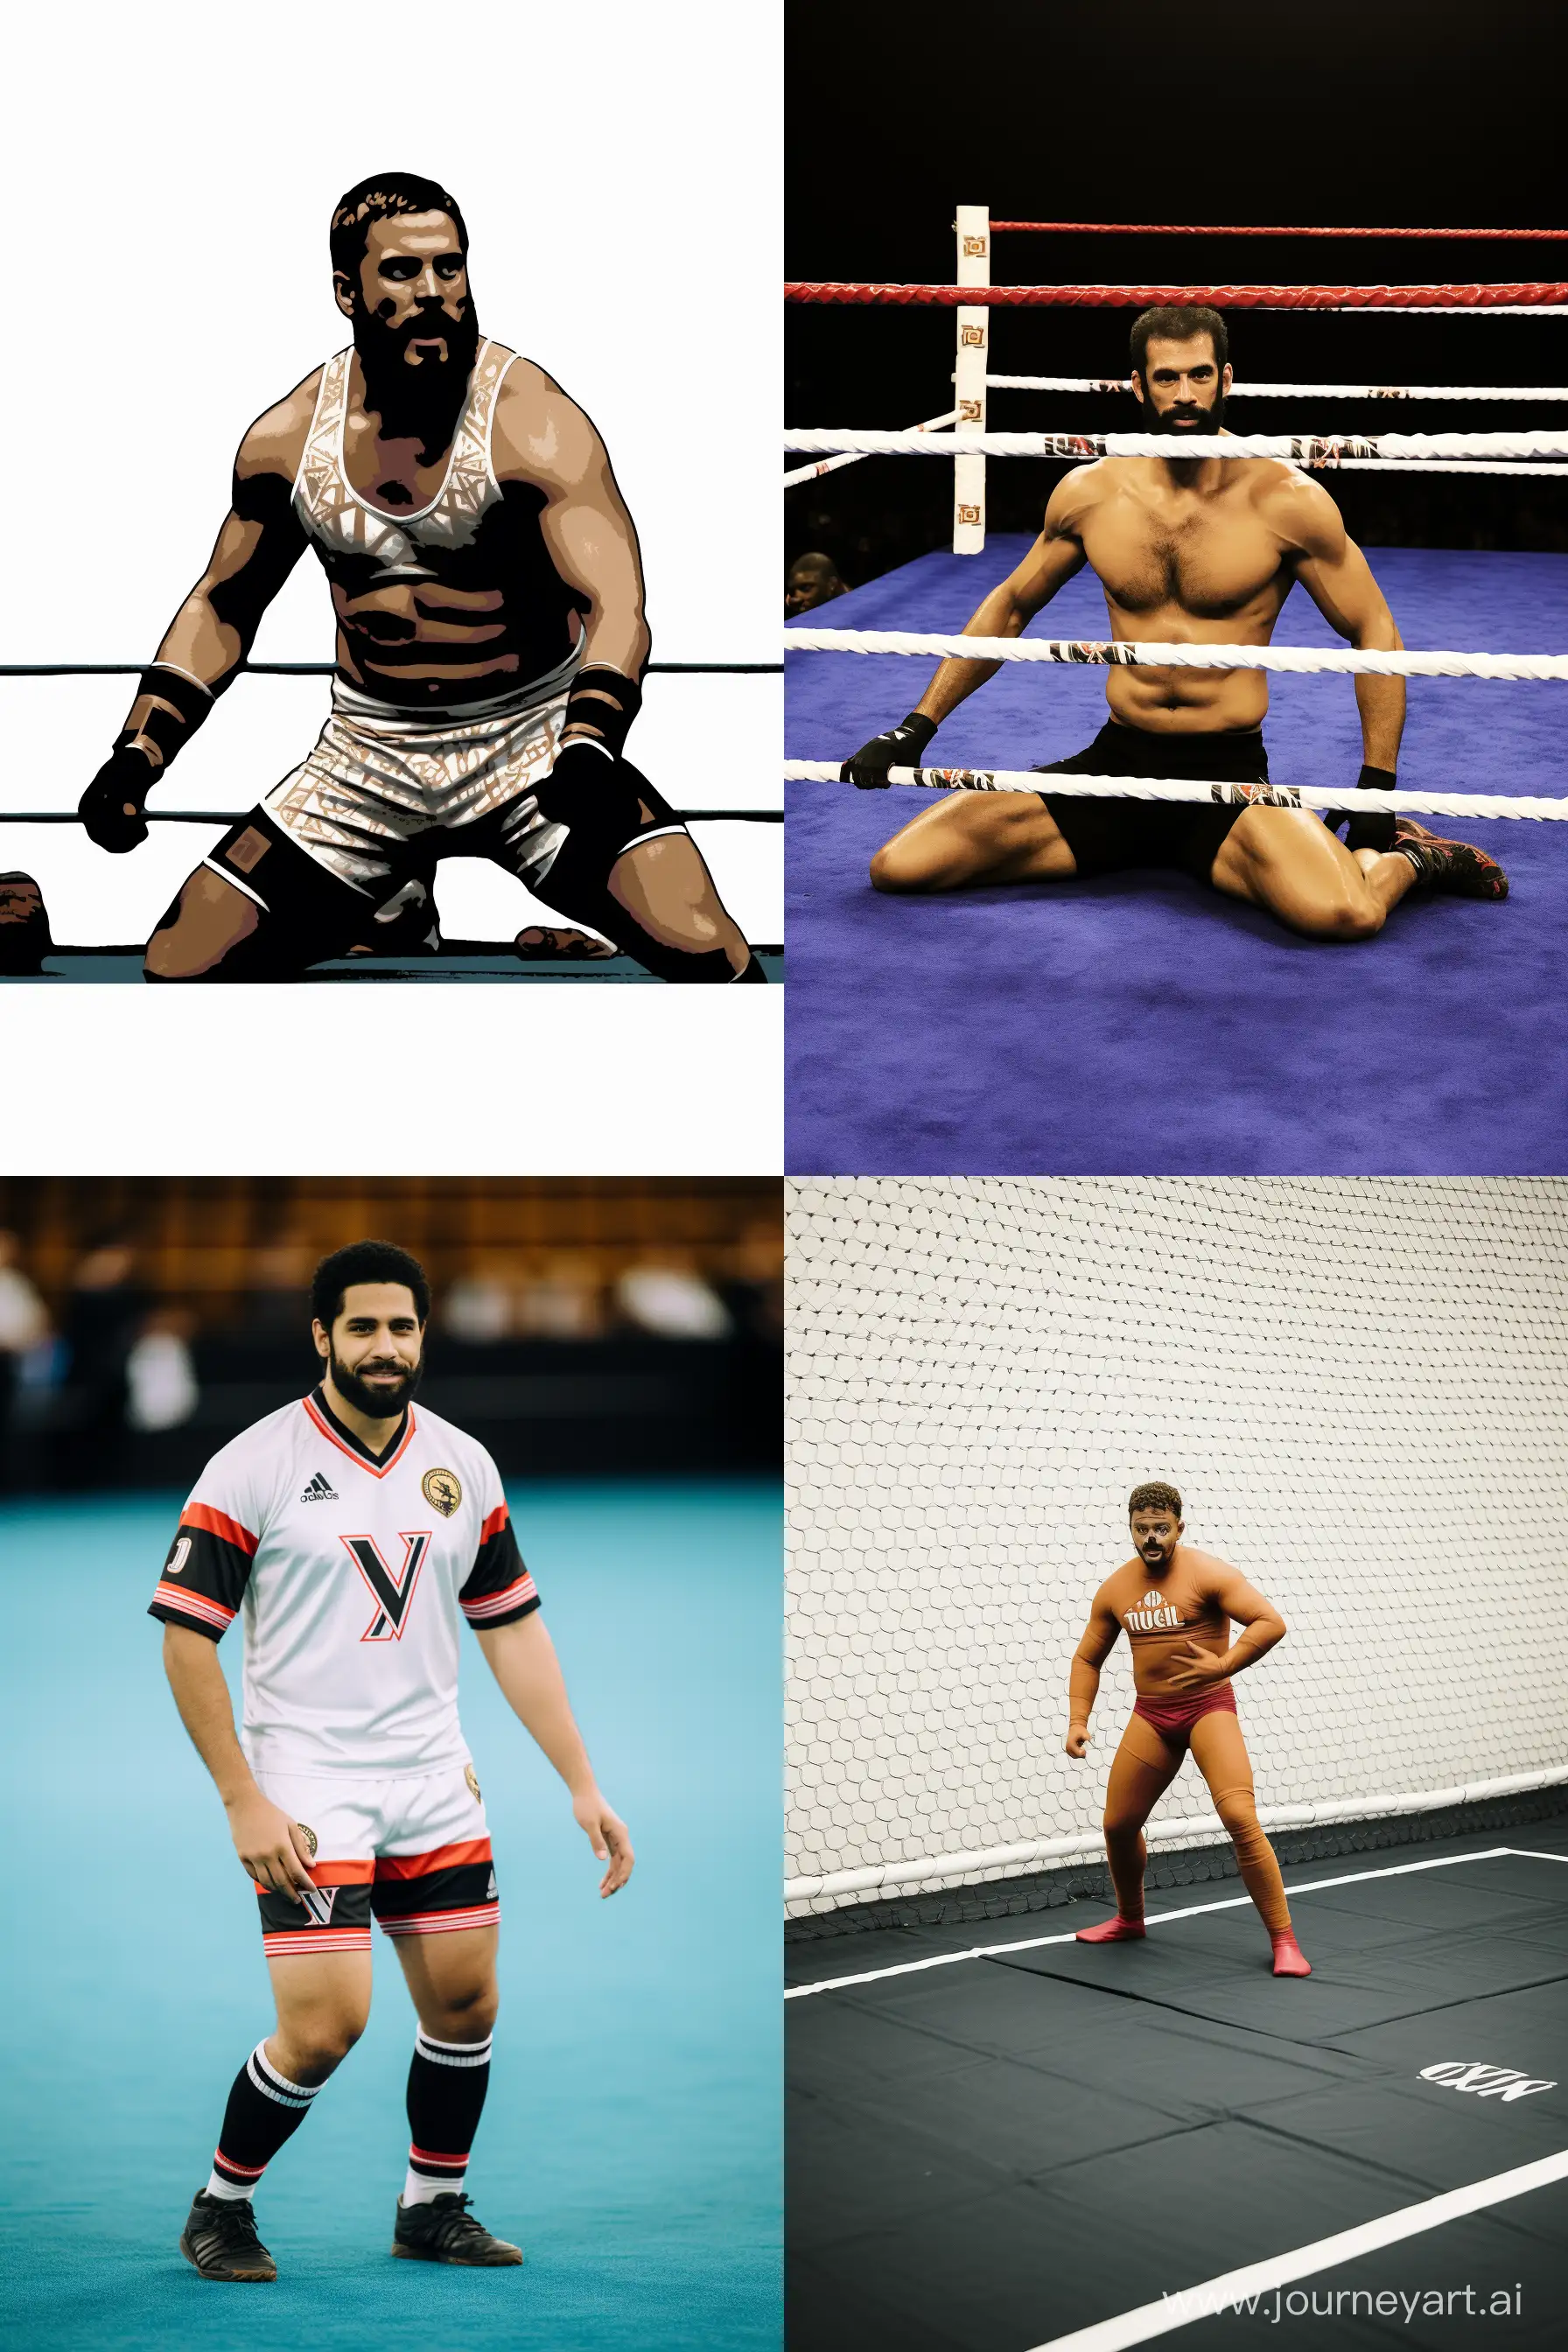 Dynamic-Portrait-Mohamed-Salah-in-Wrestling-Attire